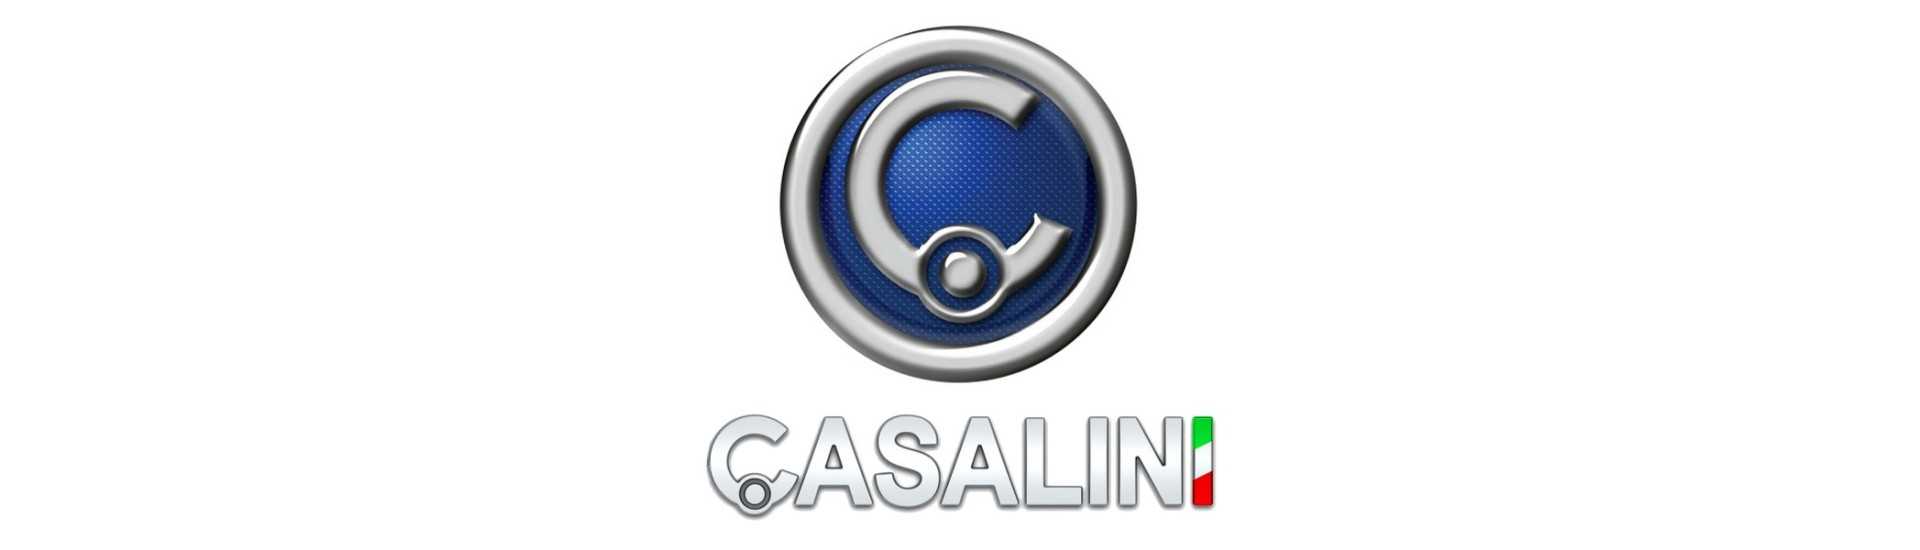 Reflektor till bästa pris för en bil utan körkort Casalini